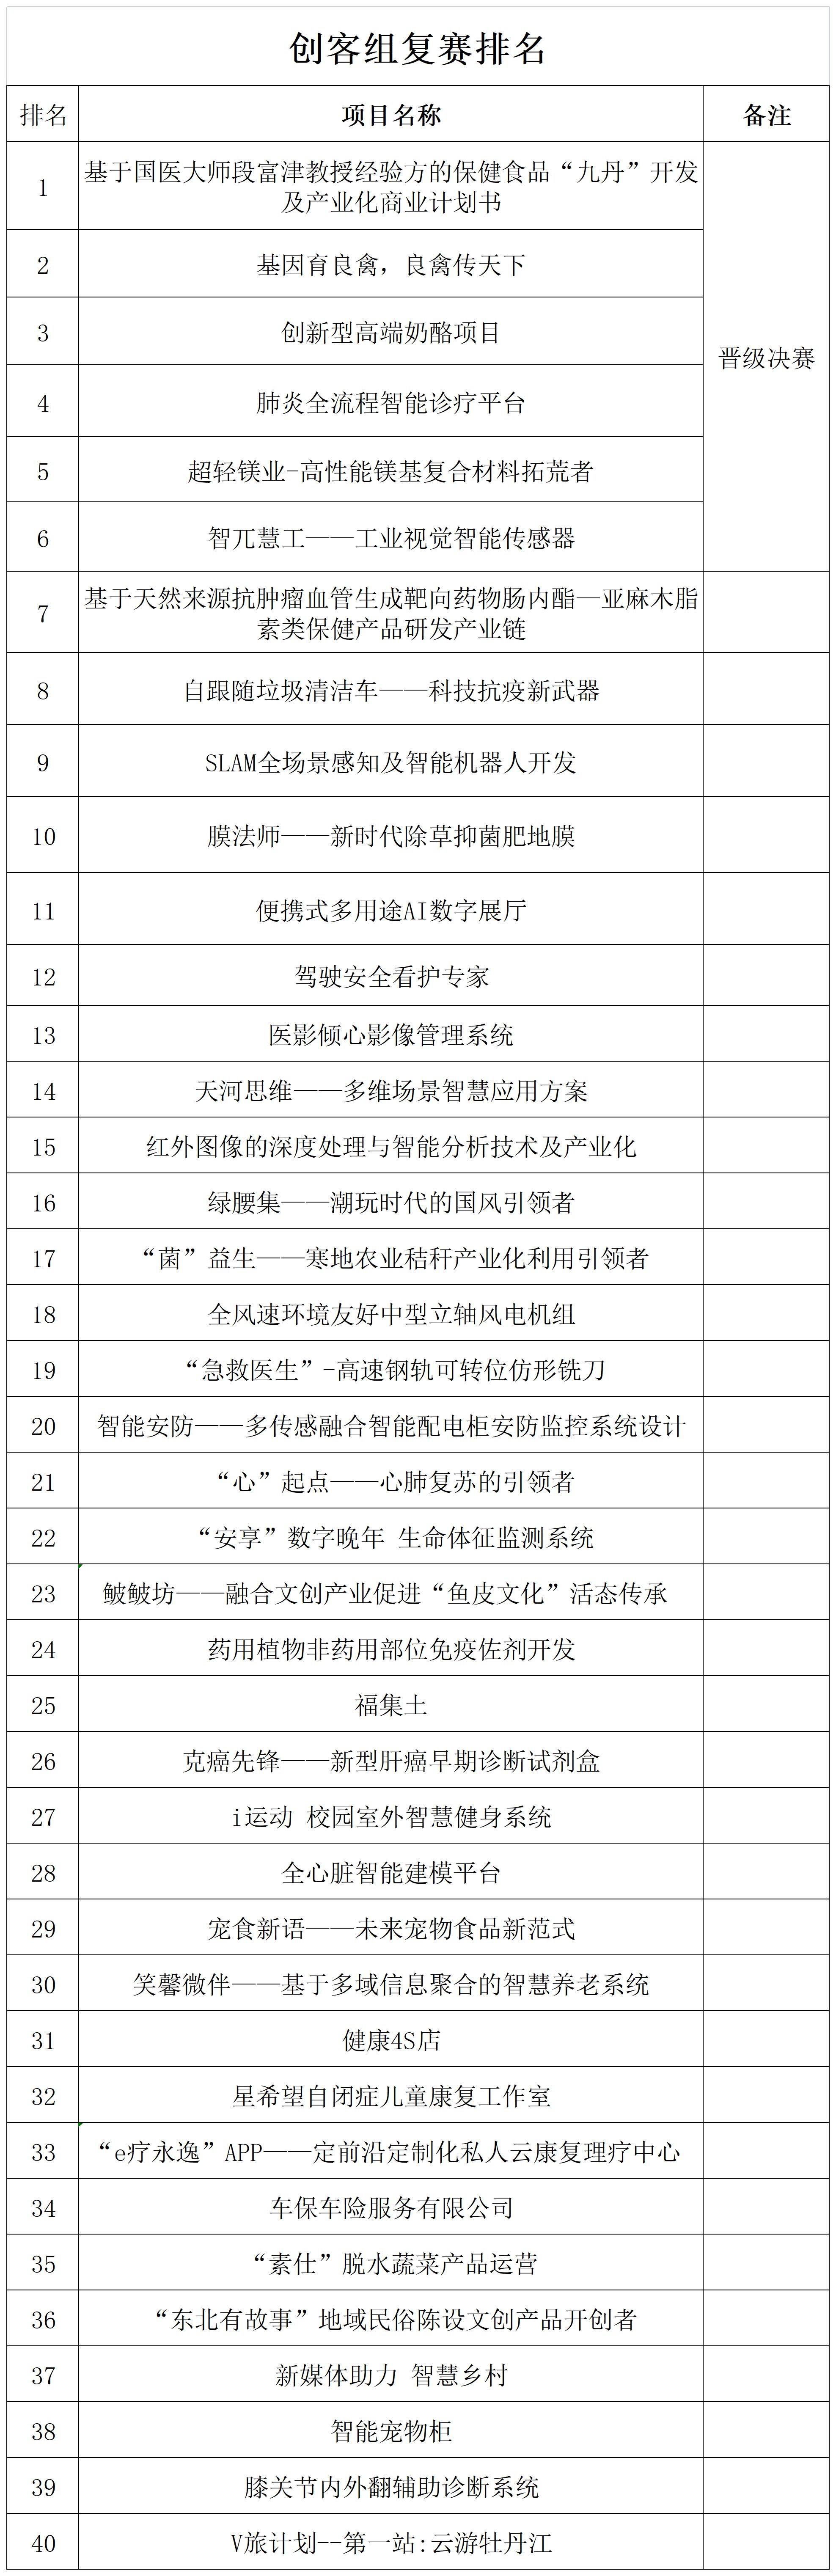 创客中国复赛成绩公示表_A1C42.jpg